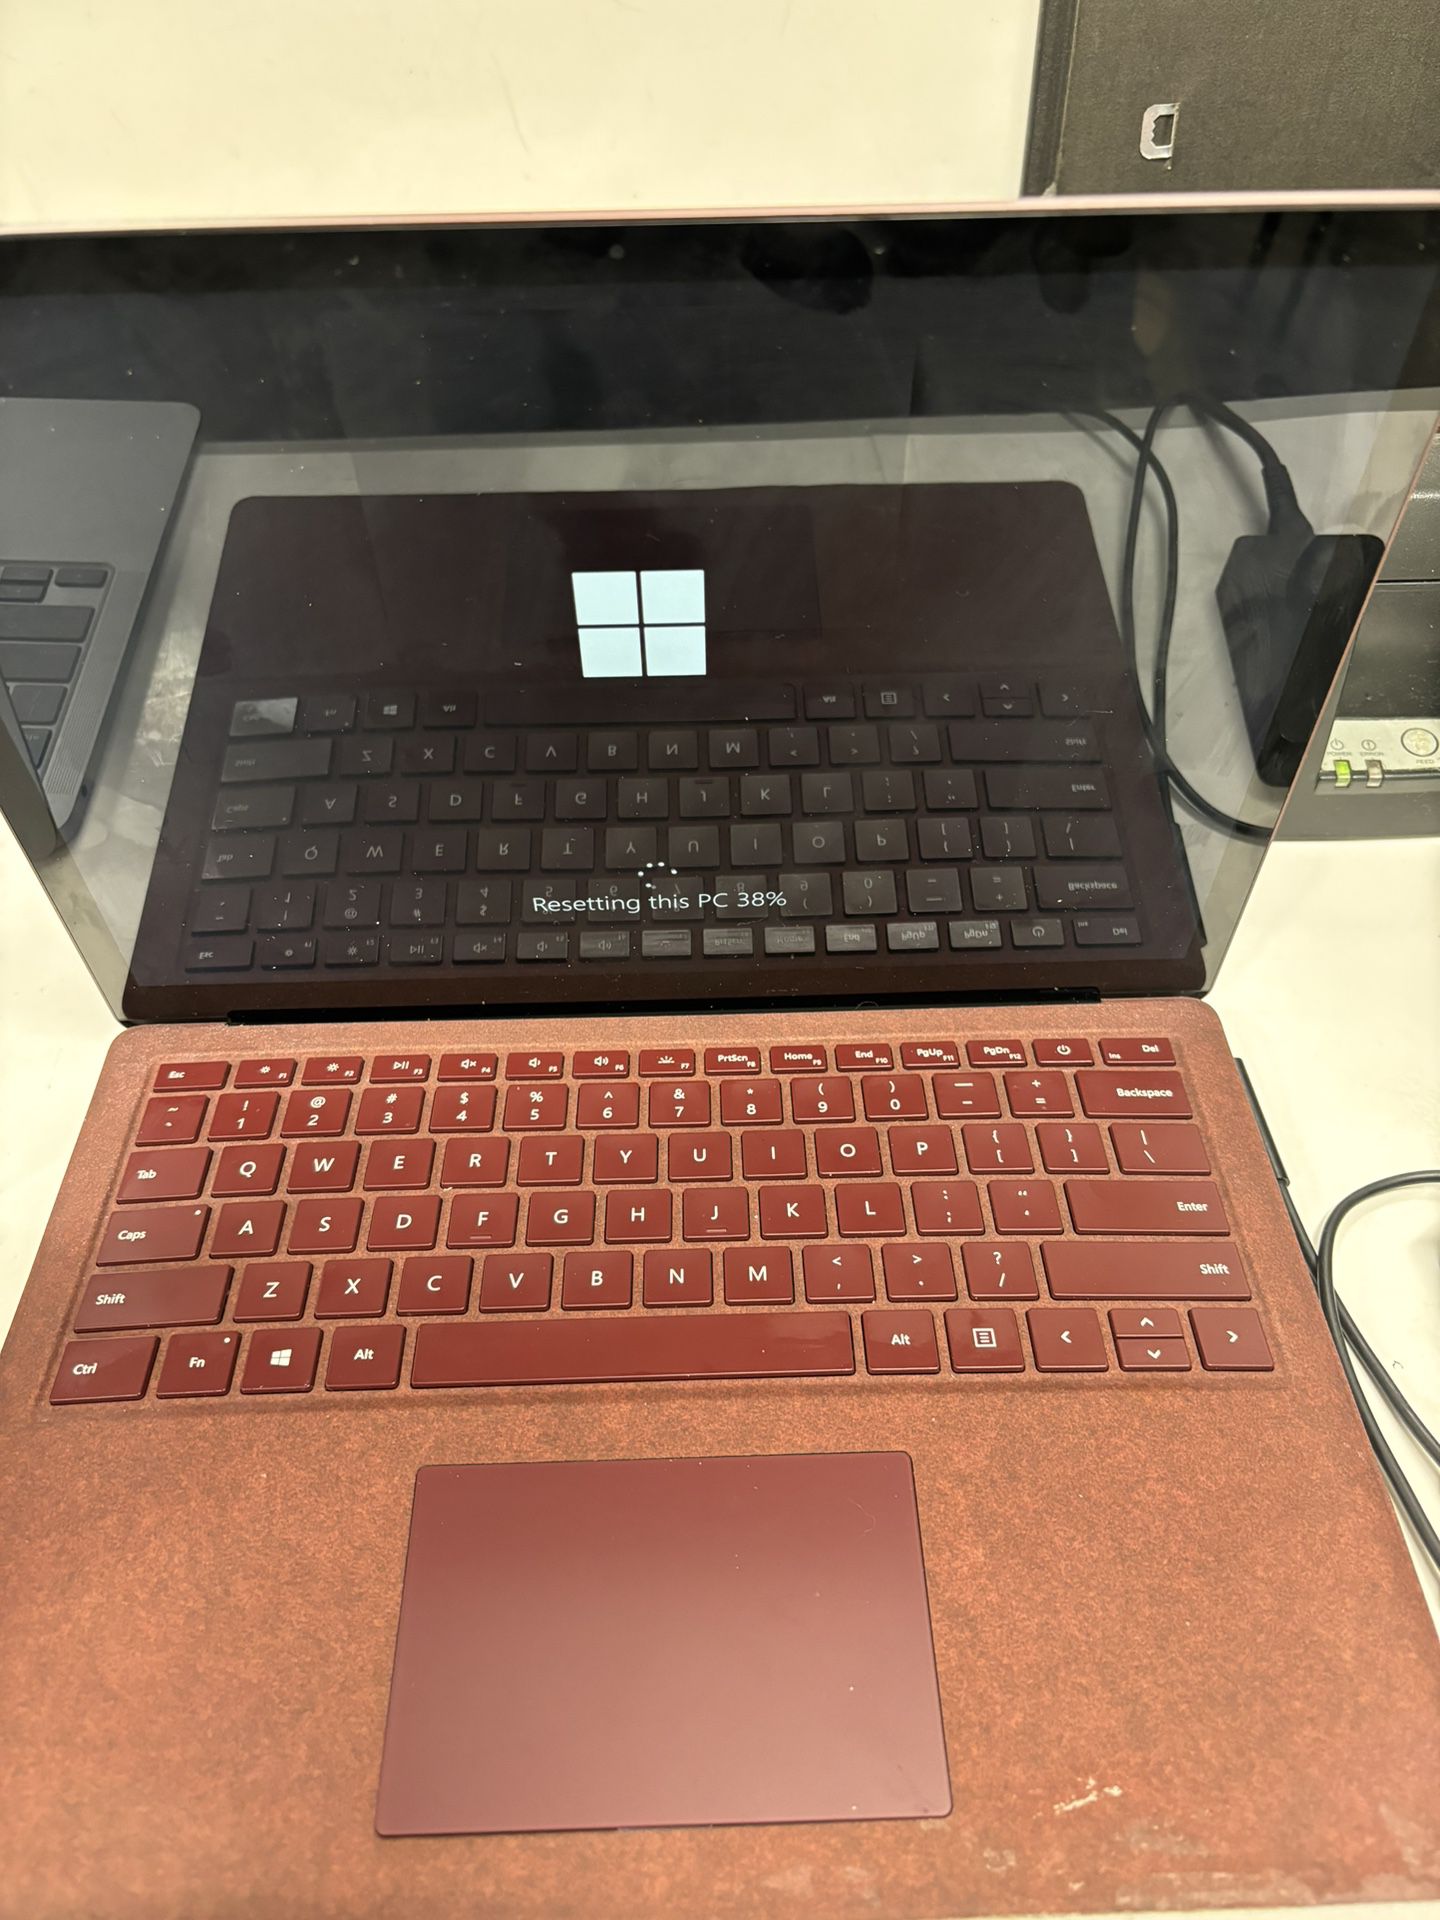 Microsoft surface laptop 1769  13” 128GB SSD INTEL i5-7200U 8gb Ram - Maroon 